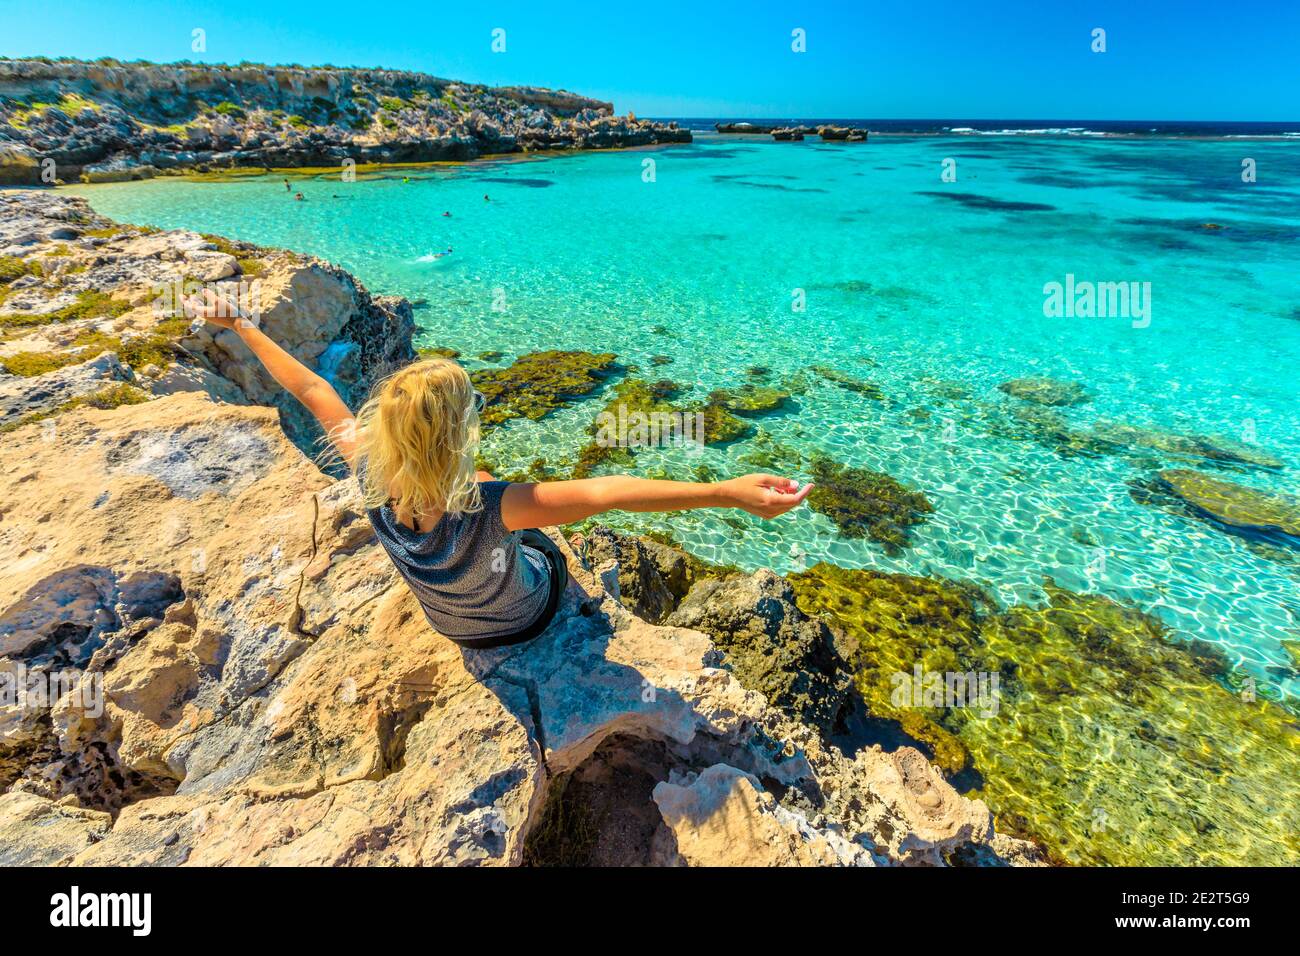 Bonne femme appréciant la mer tropicale turquoise de Little Salmon Bay, baie populaire sur l'île de Rottnest, Australie occidentale. Little Salmon Bay est abritée Banque D'Images